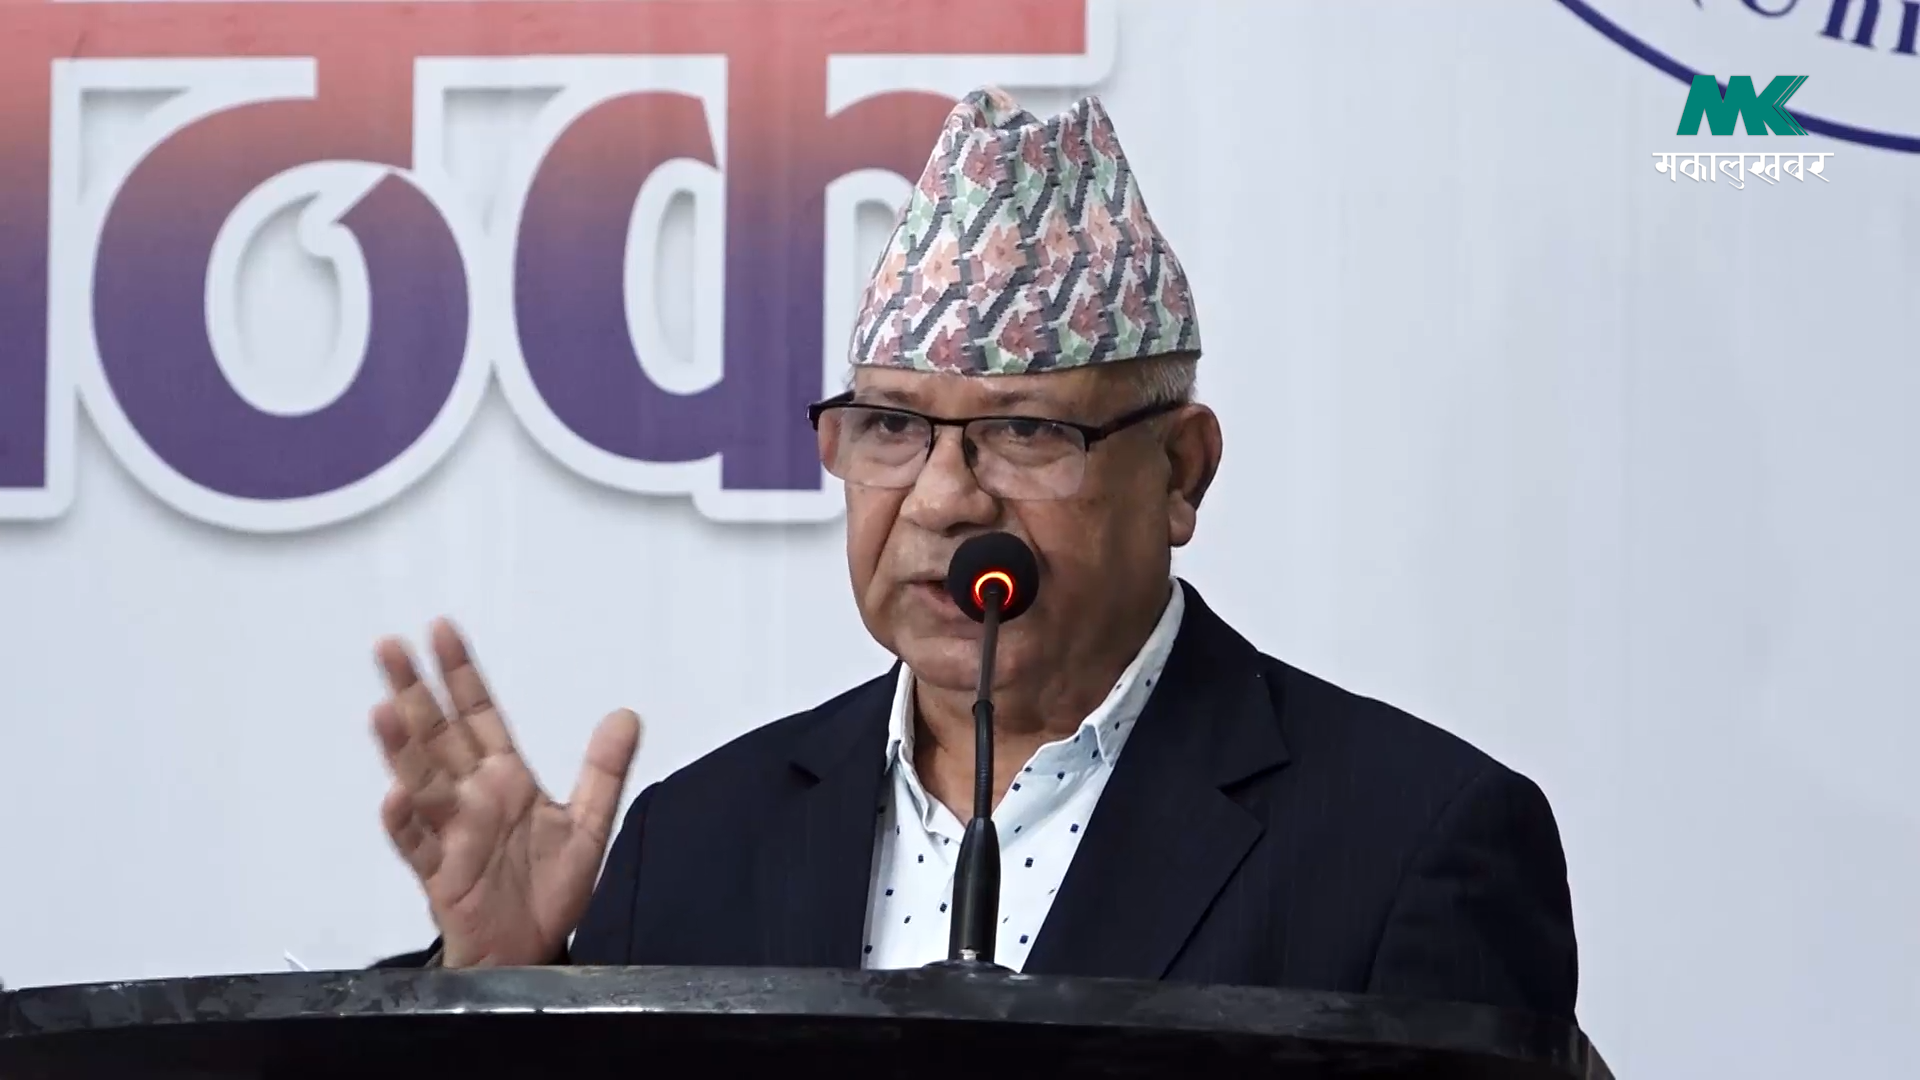 गण्डकीमा एकीकृत समाजवादीलाई मन्त्रिपरिषद्मा सहभागी गराउने सहमति पालना भएन : अध्यक्ष नेपाल